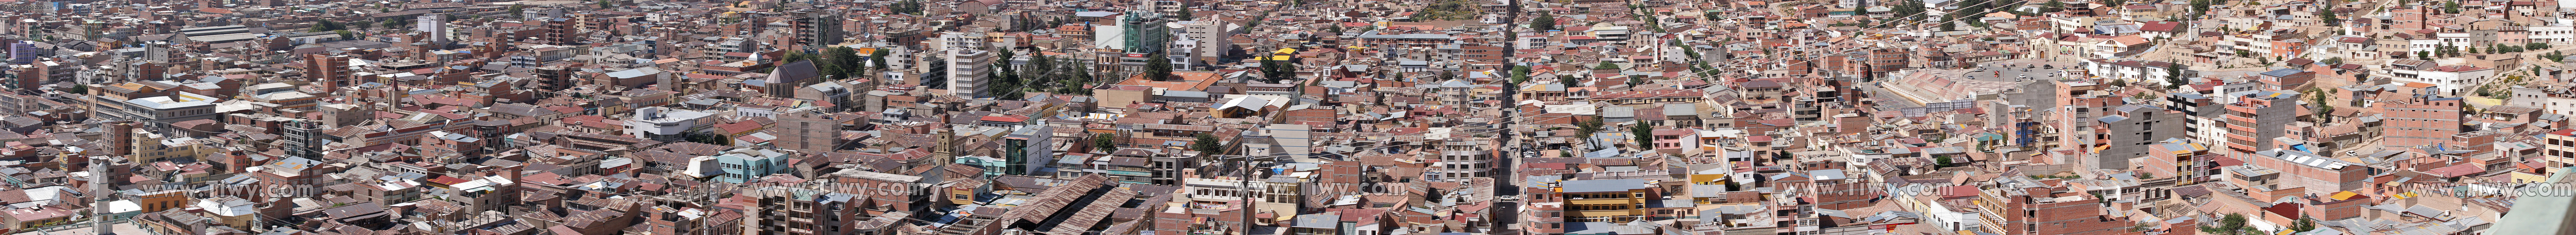 Parte central de la ciudad de Oruro